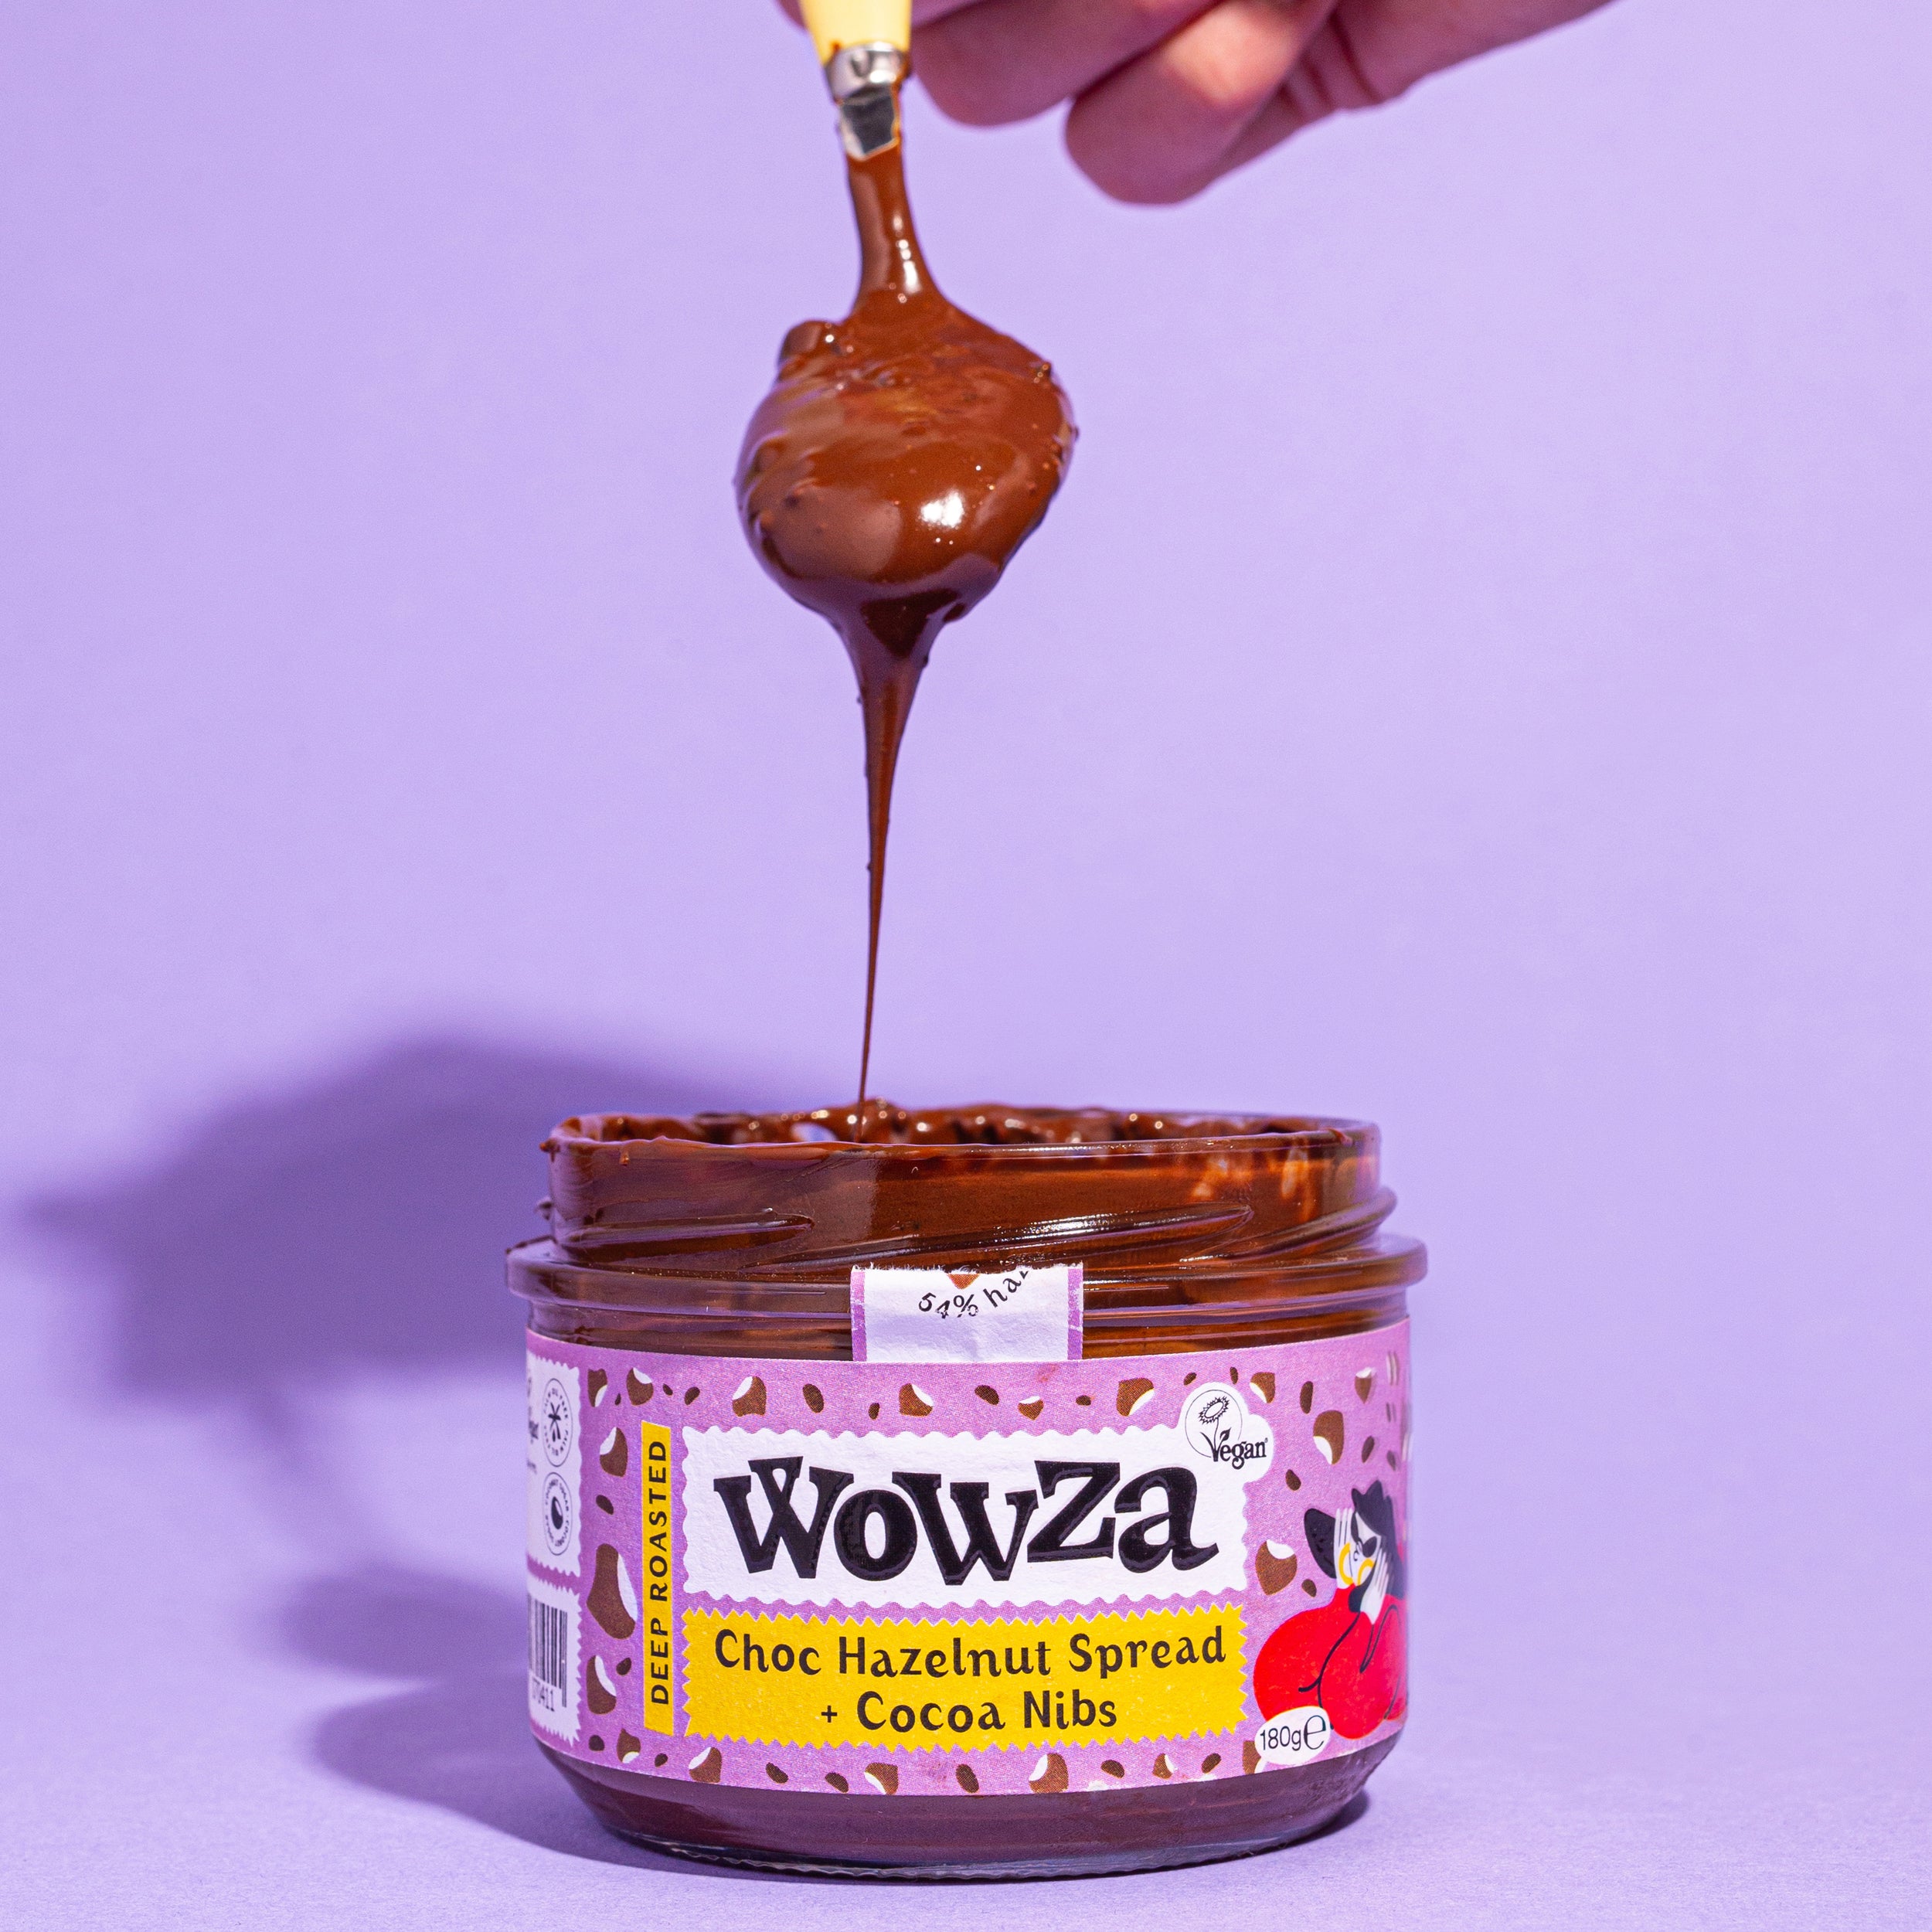 Try Wowza, our new gooey Choc Hazelnut Spread for just £5